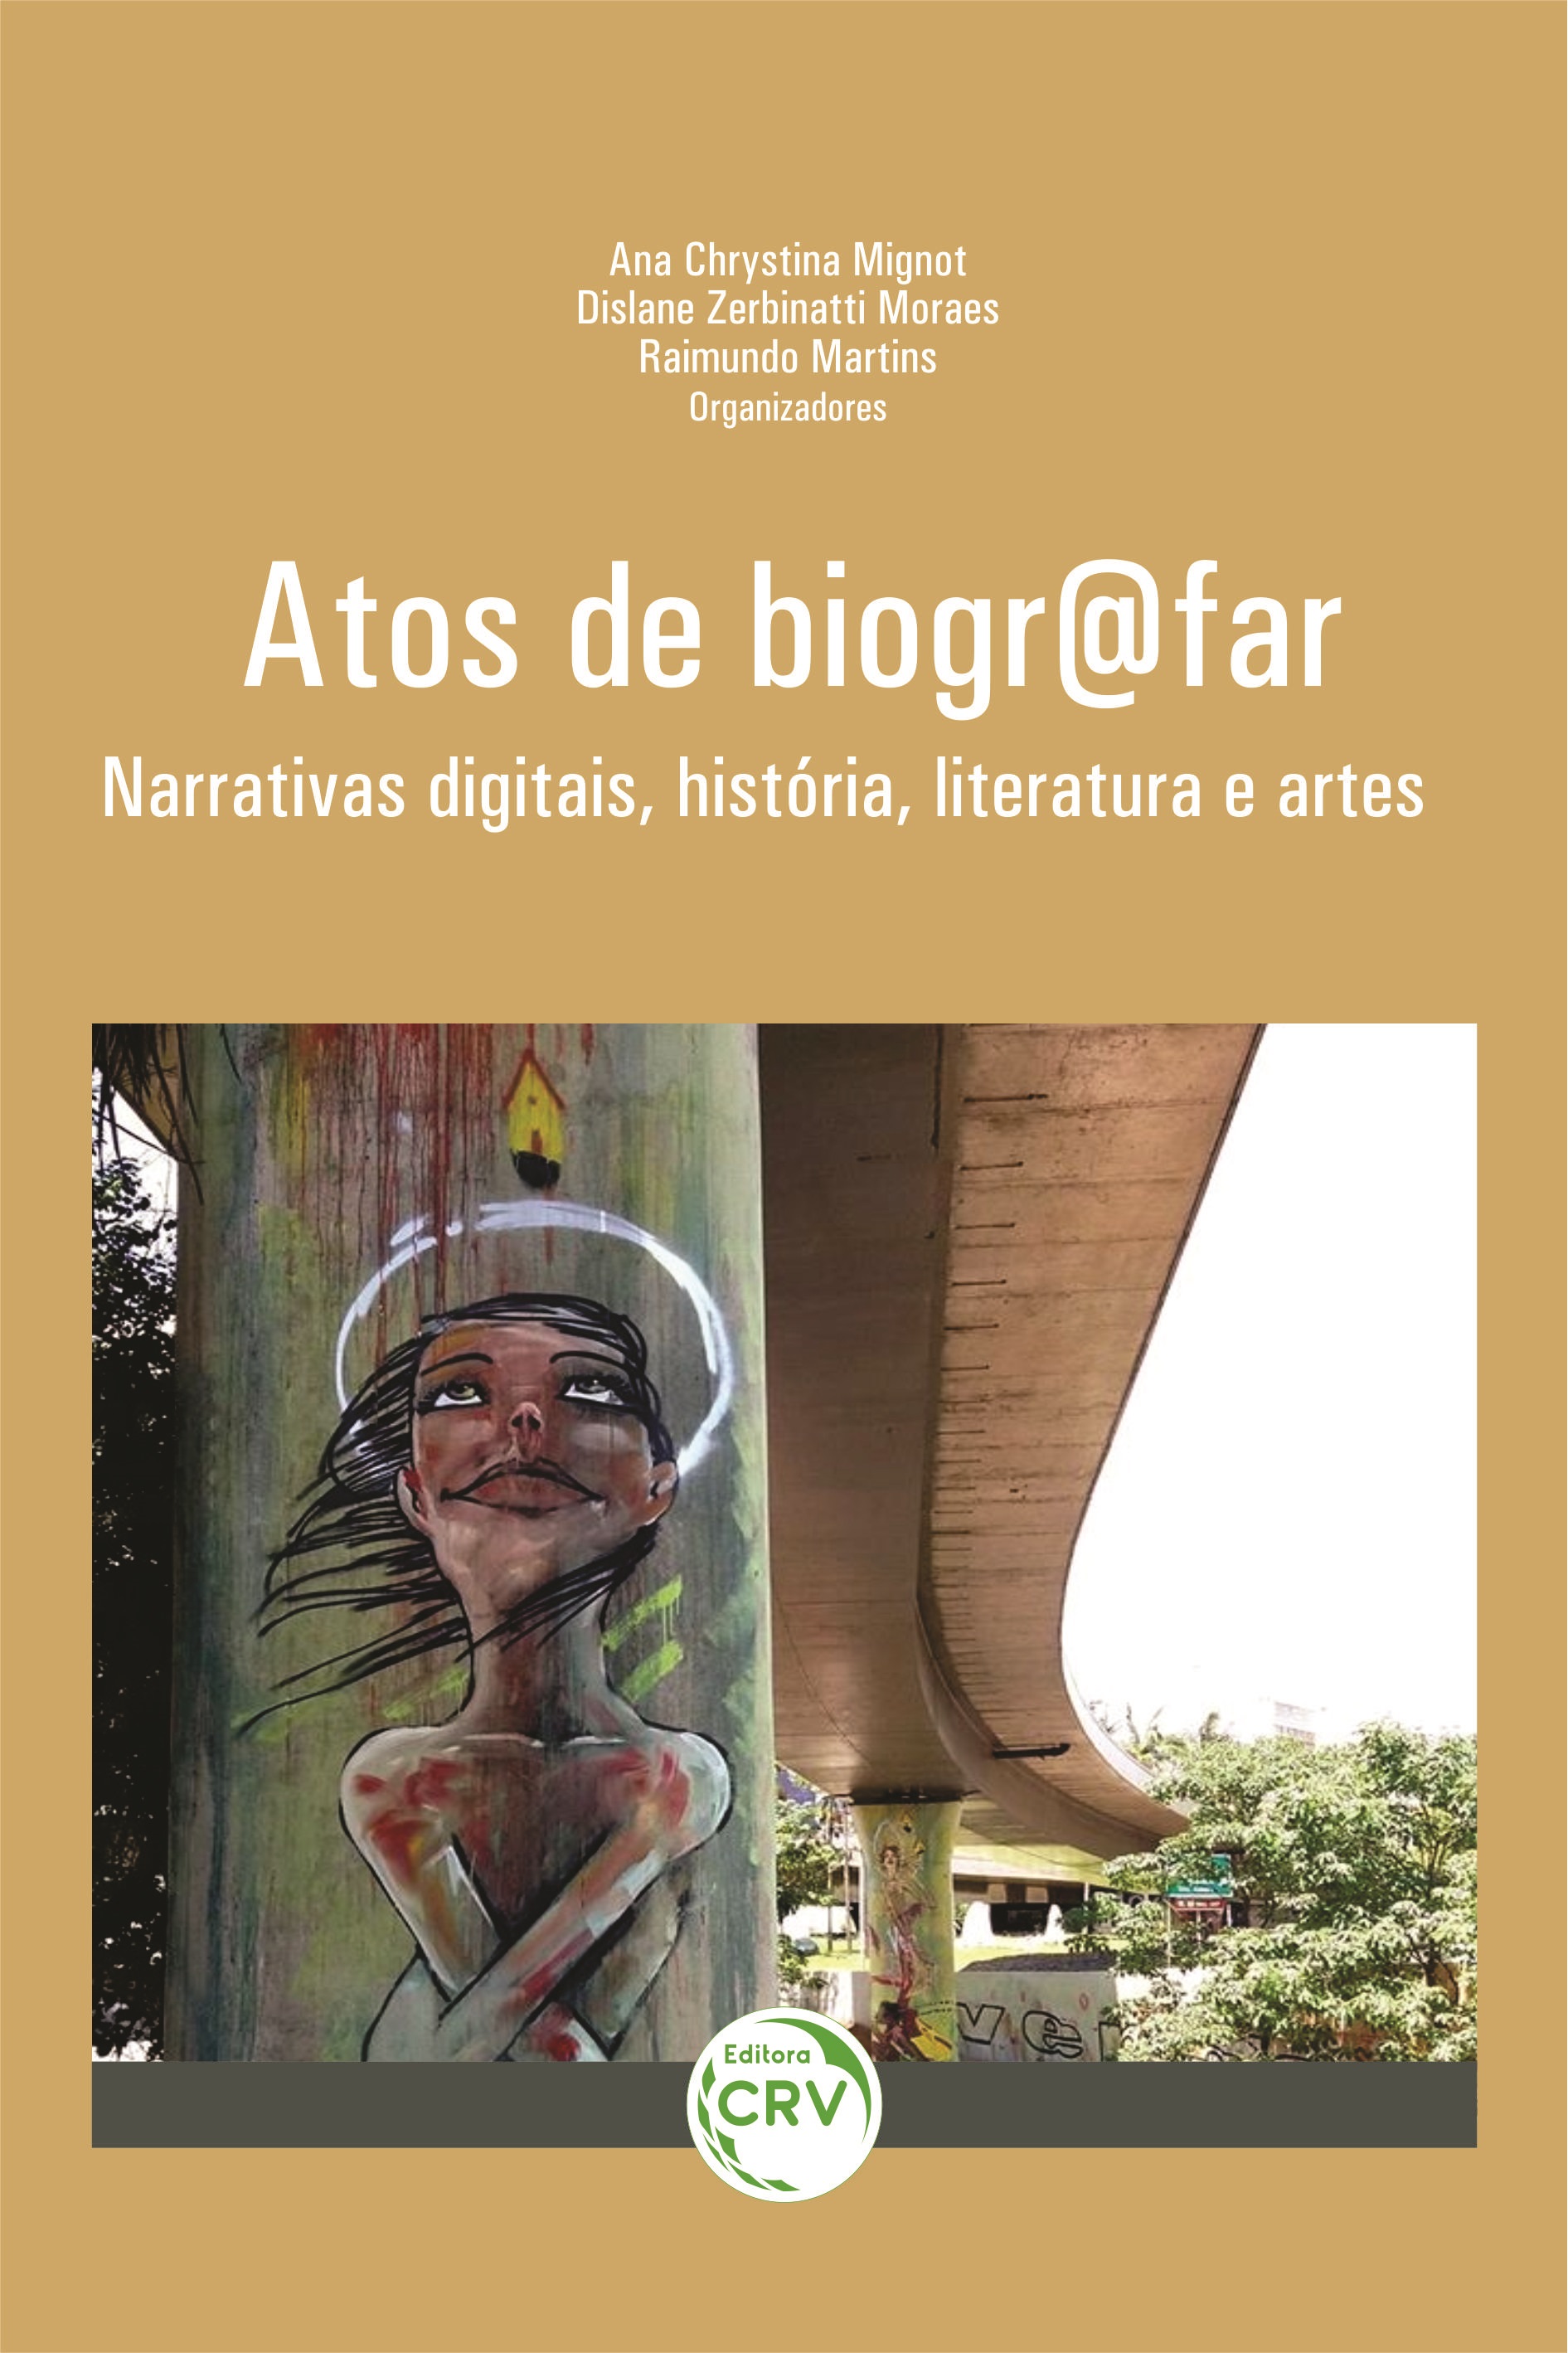 Atos de biogr@far:  narrativas digitais, história, literatura e artes